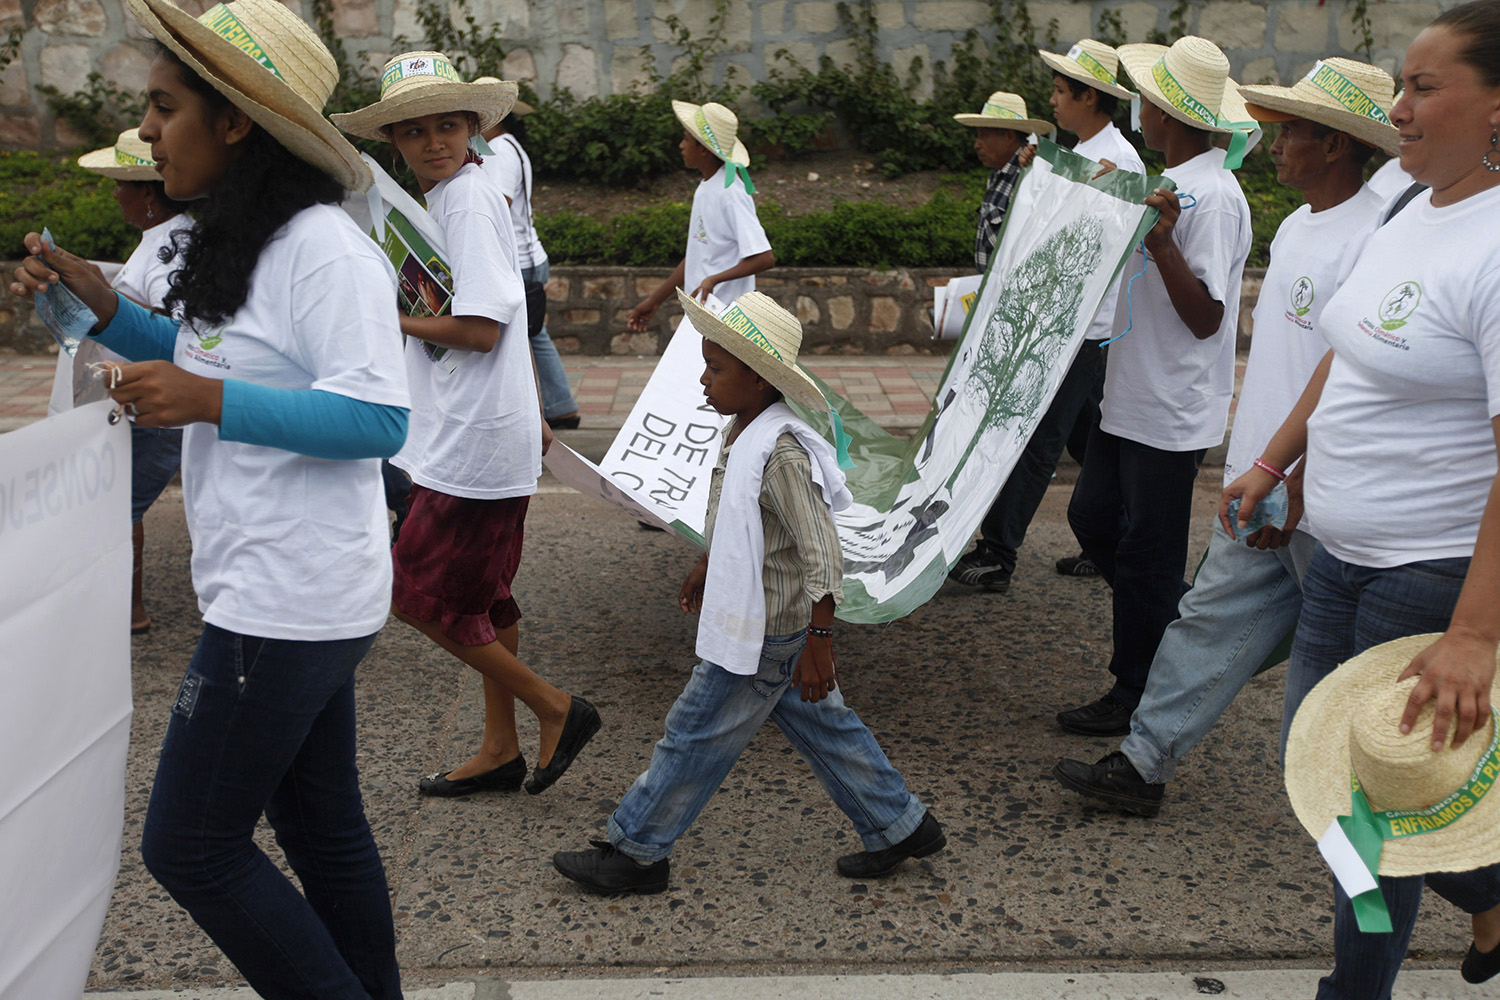 Latinoamérica, un territorio peligroso para activistas medioambientales